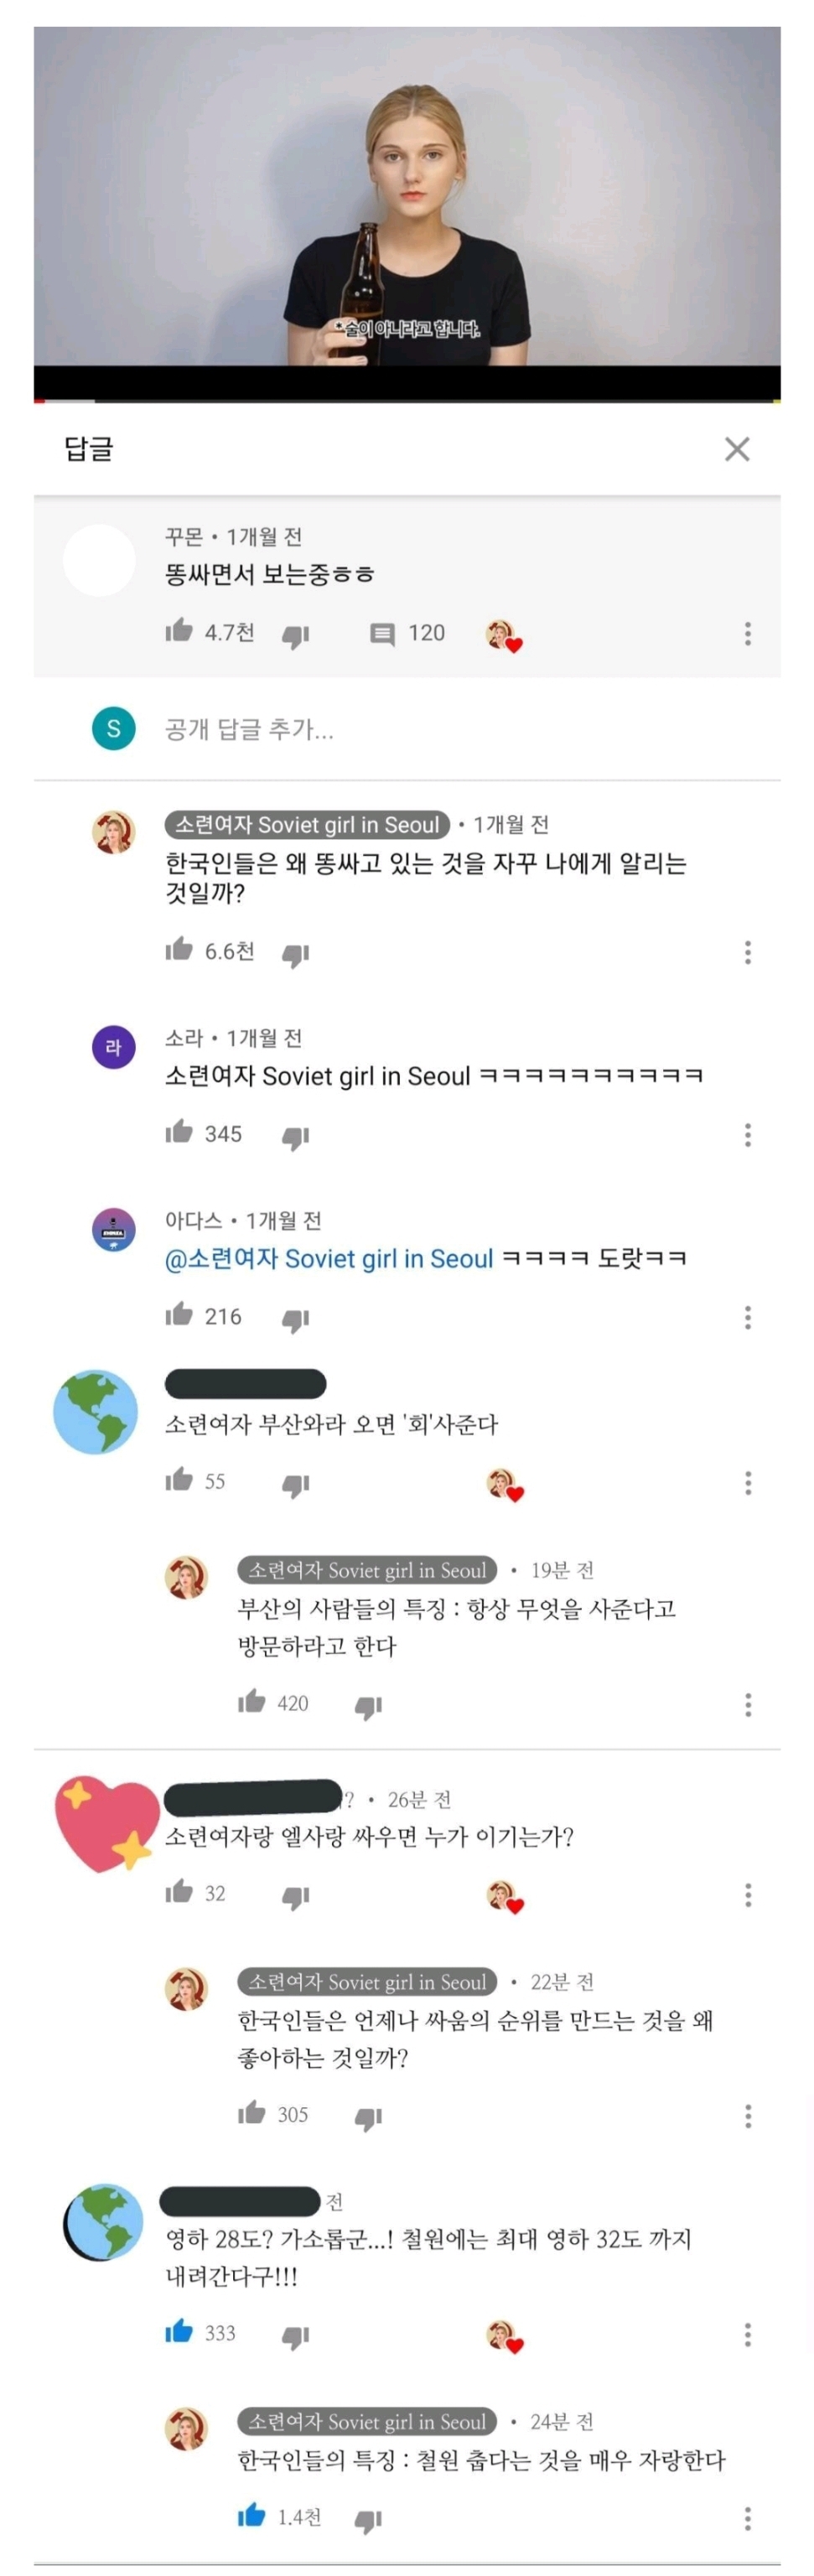 쏘련여자가 지적한 한국인들의 특징